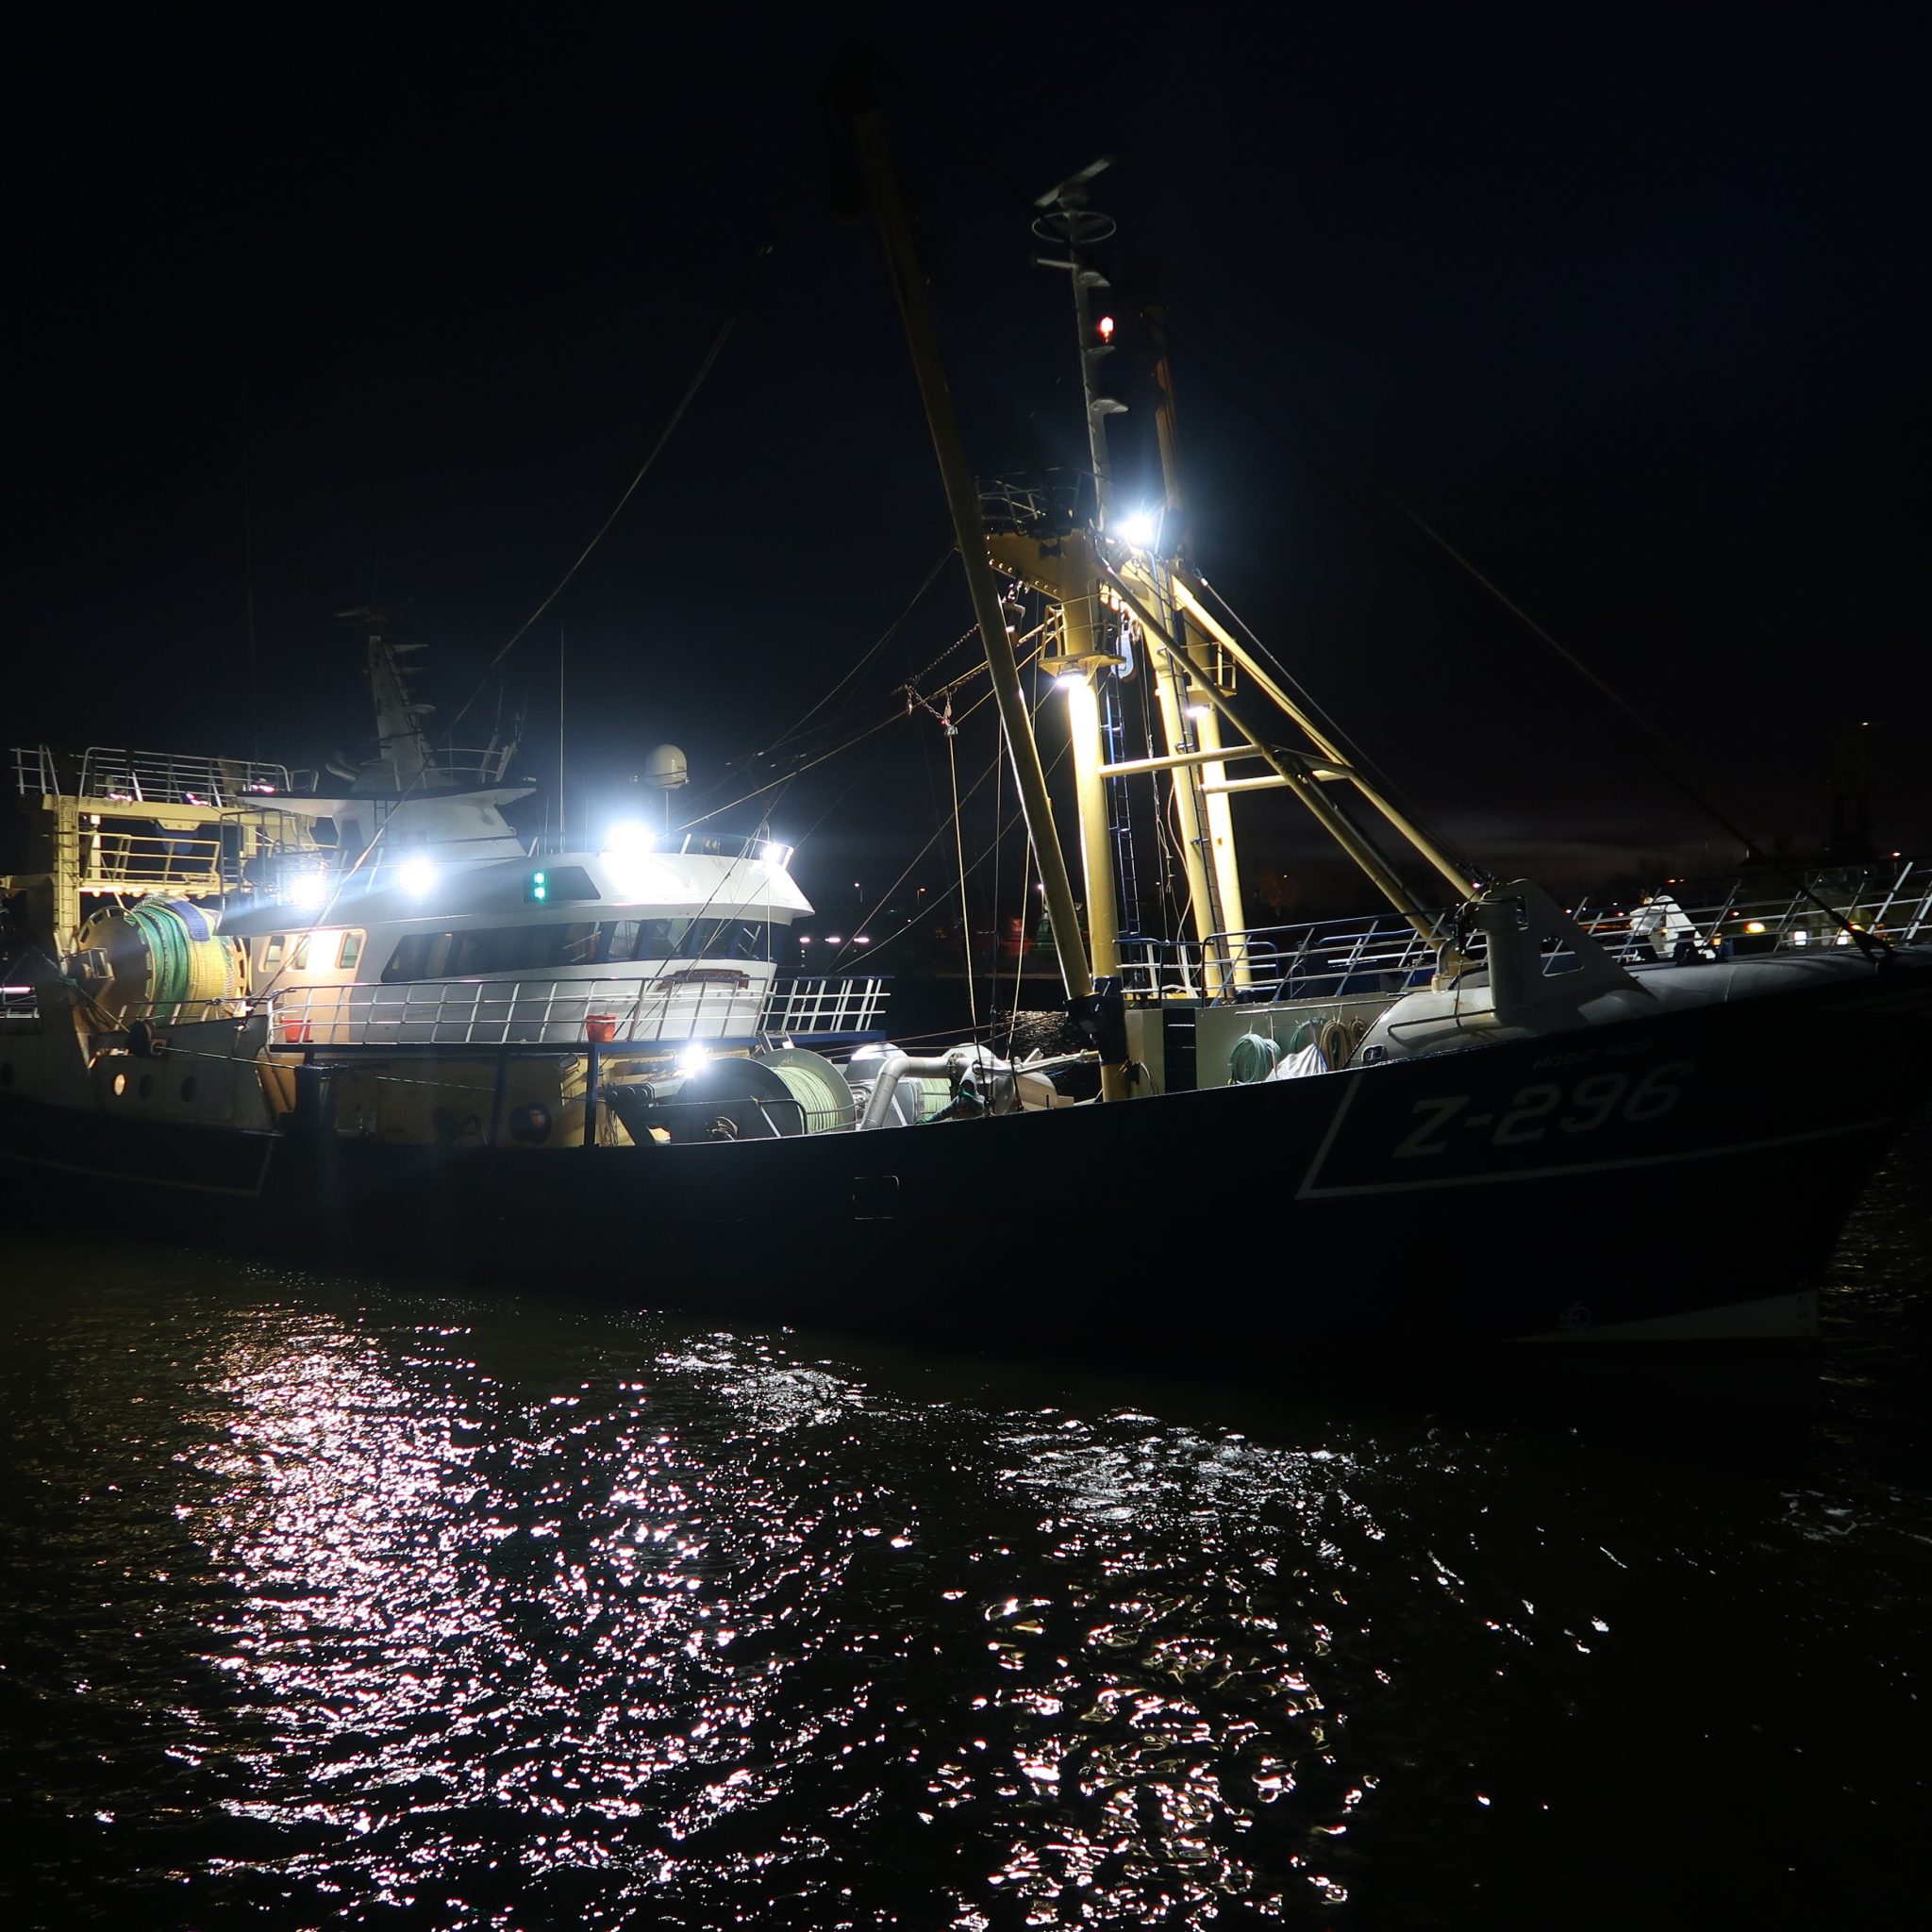 De Z-296 loopt in nachtelijke uren de haven van Vlissingen binnen. (Foto W.M. den Heijer)